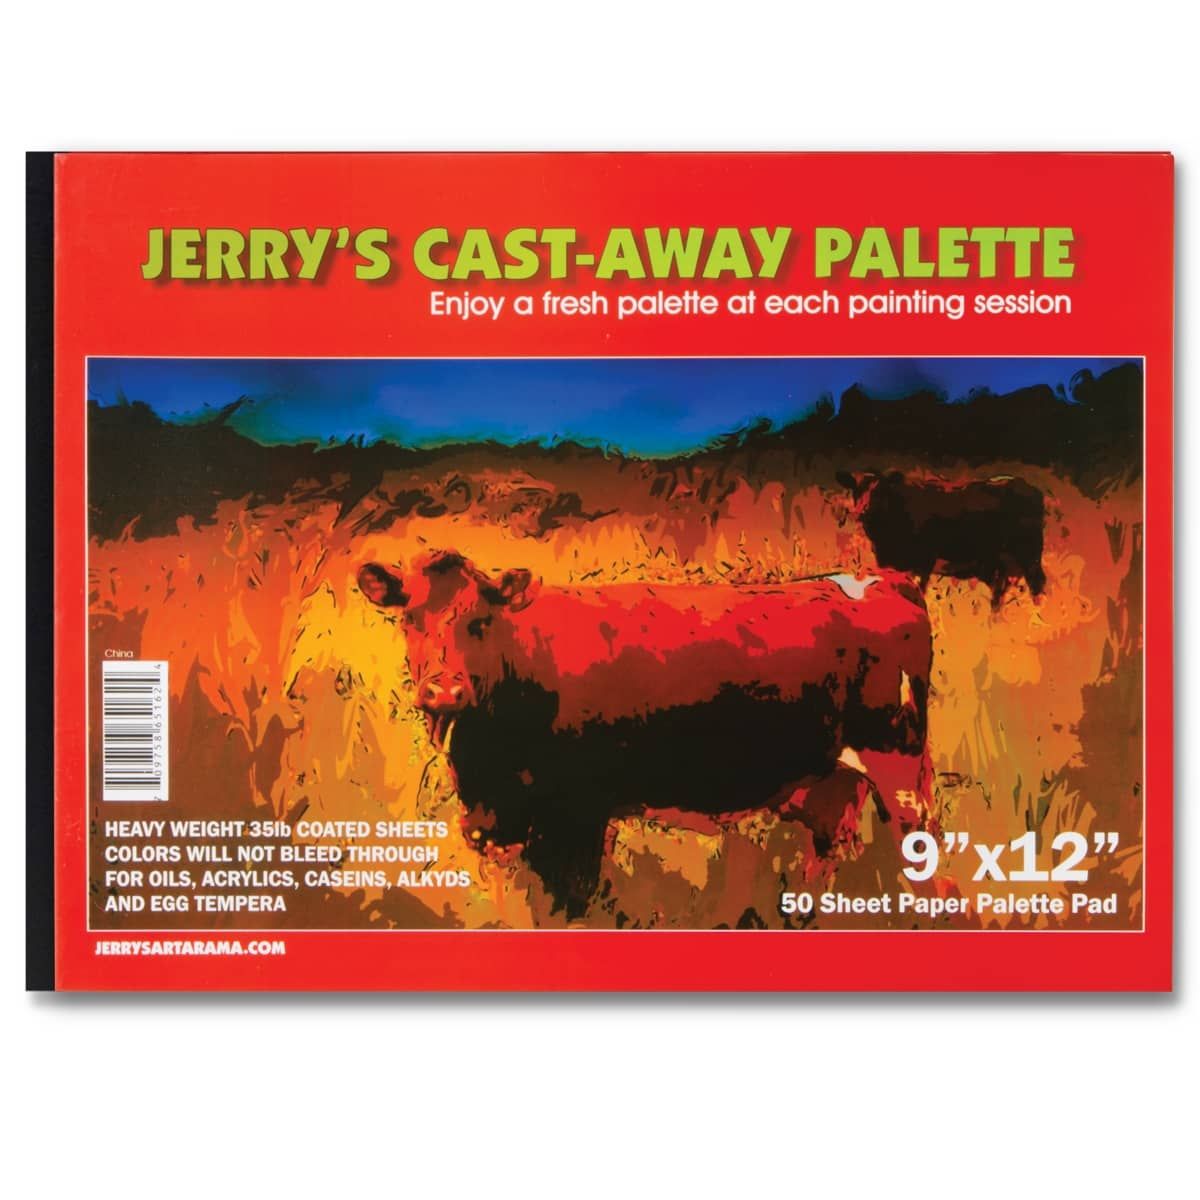 Jerry's Cast Away 9x12" Disposable Paper Palette Pad 